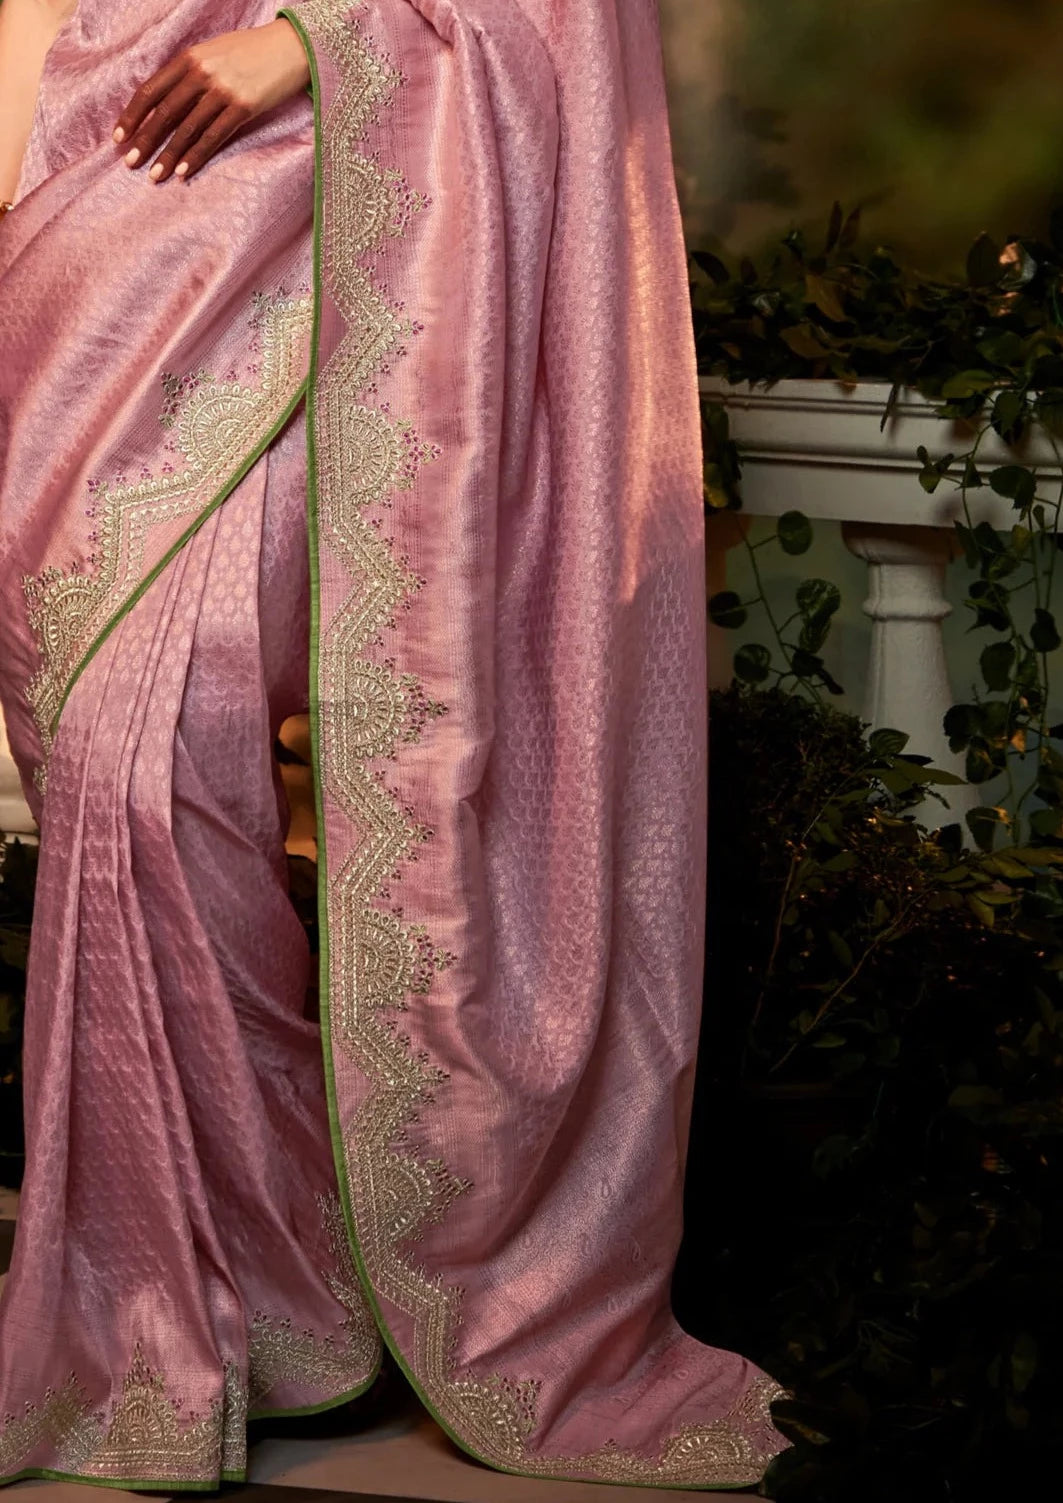 Banarasi katan silk hand embroidered work pink saree contrast blouse online price india usa uk.